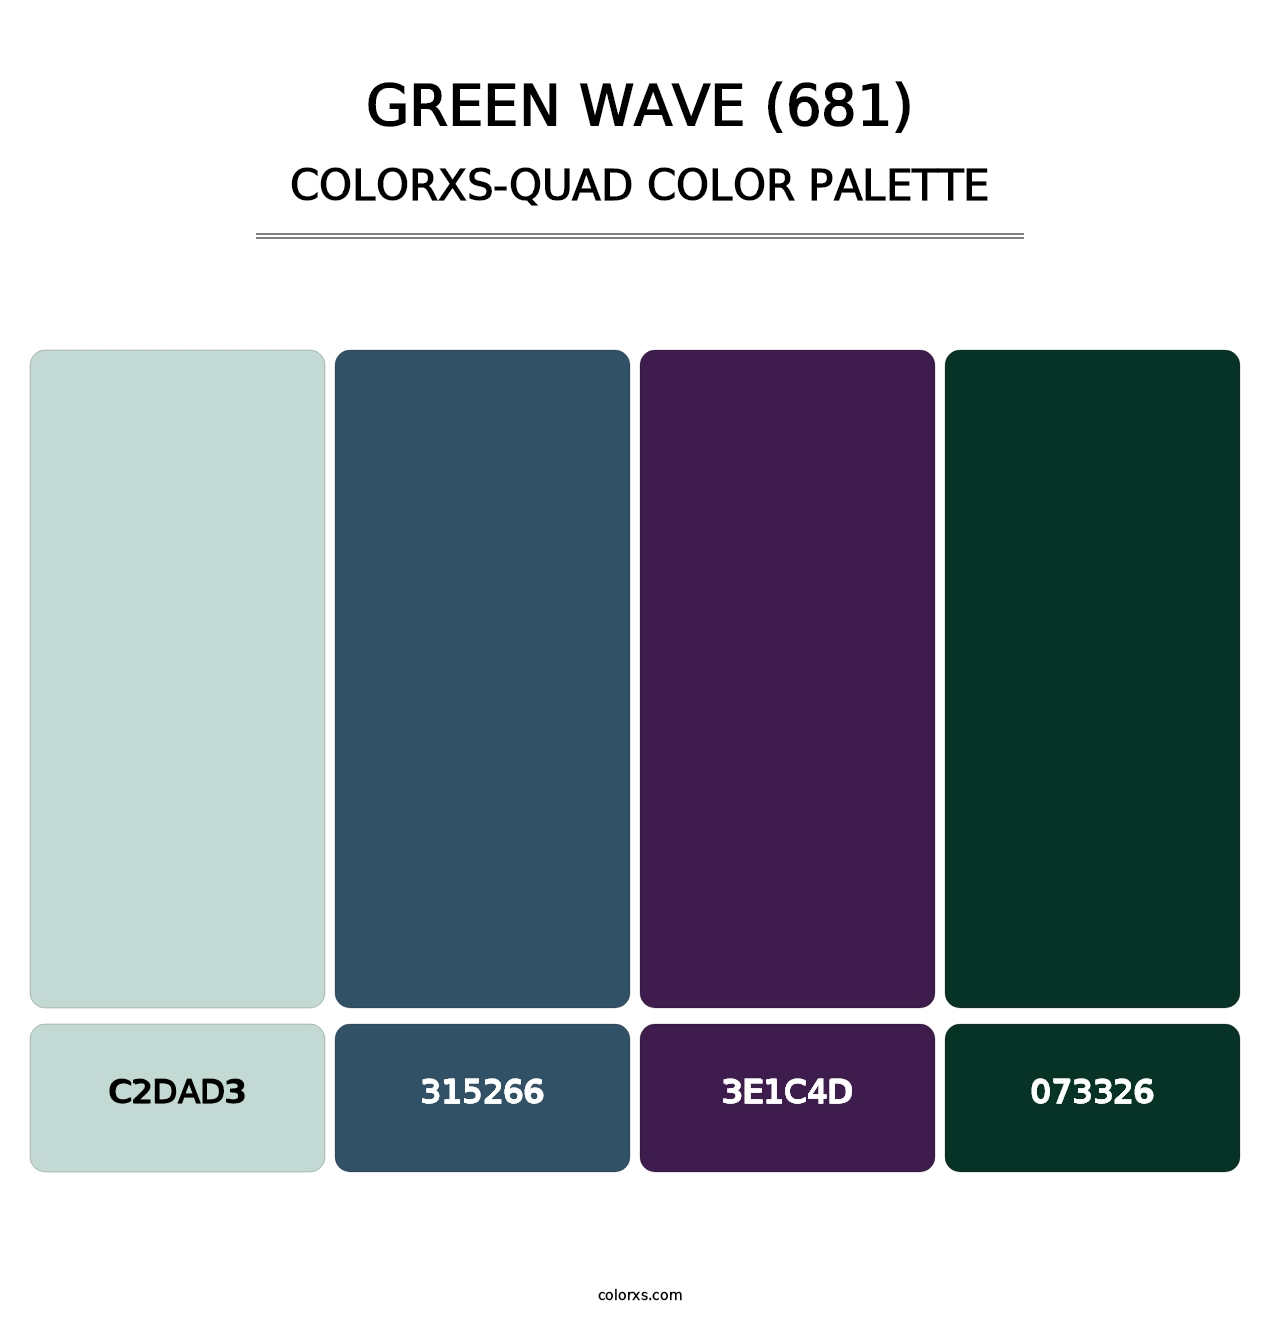 Green Wave (681) - Colorxs Quad Palette